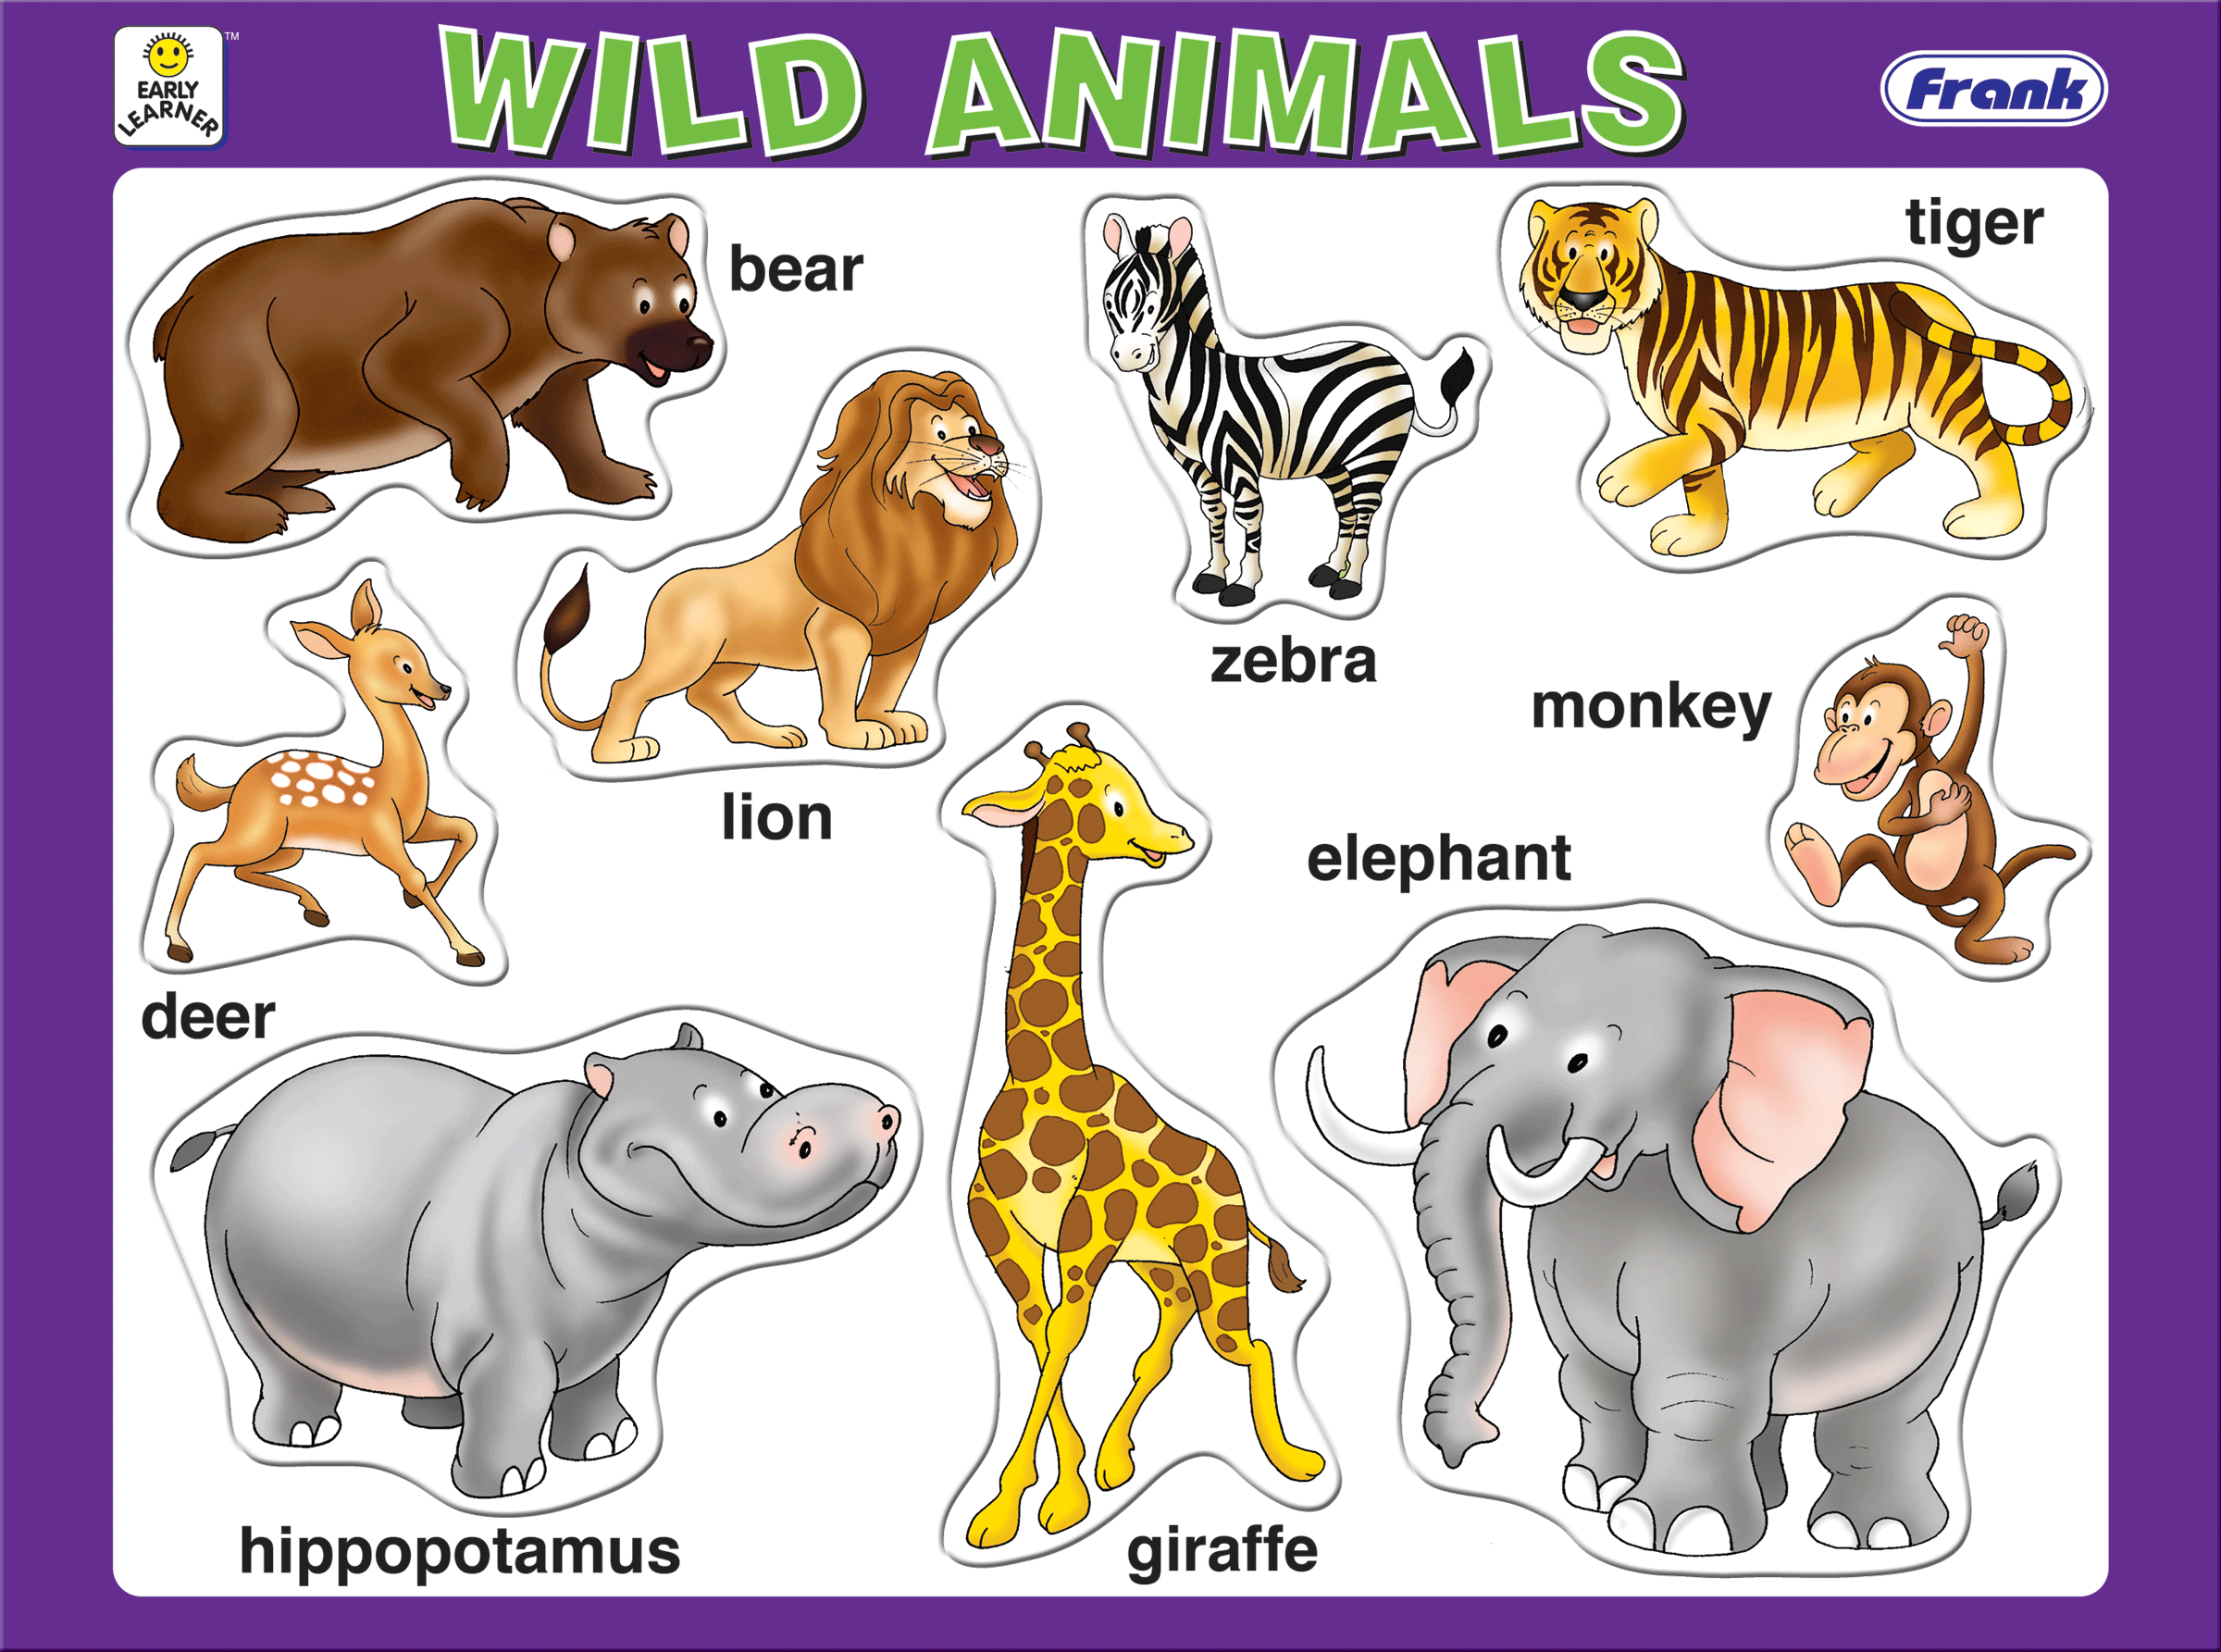 Имя animals. Для детей. Животные. Животные на английском для детей. Дикие животные на английском для детей. Изображения животных для детей.